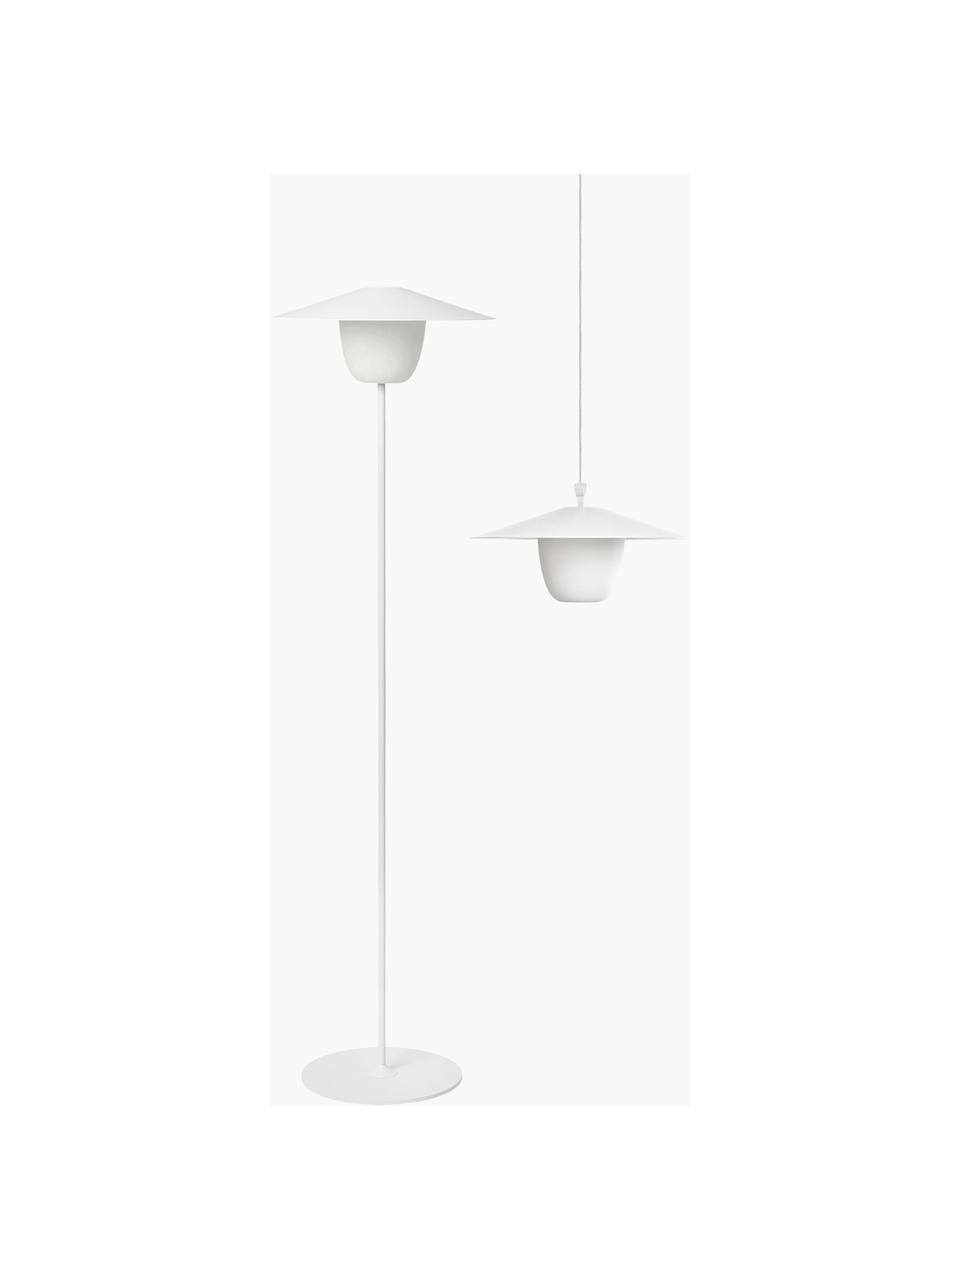 Lampada da esterno portatile a LED dimmerabile posizionabile a terra o appendibile al soffitto Ani, Paralume: alluminio, Bianco, Ø 34 x Alt. 121 cm